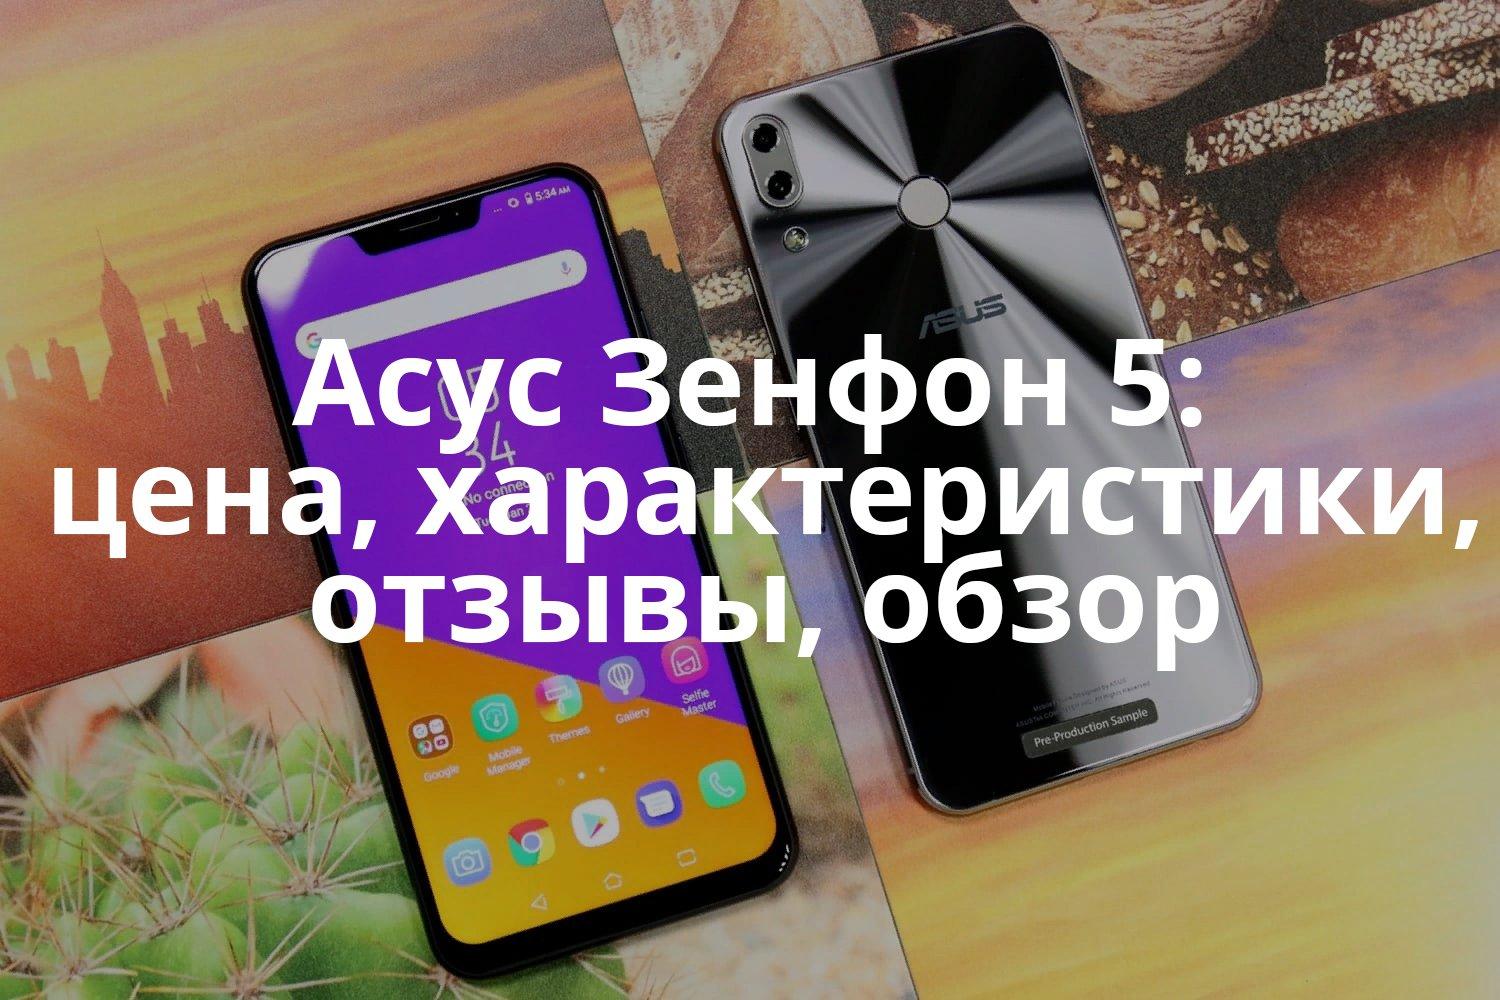 Обзор смартфона asus zenfone selfie: обзор на русском, характеристики, цена в россии